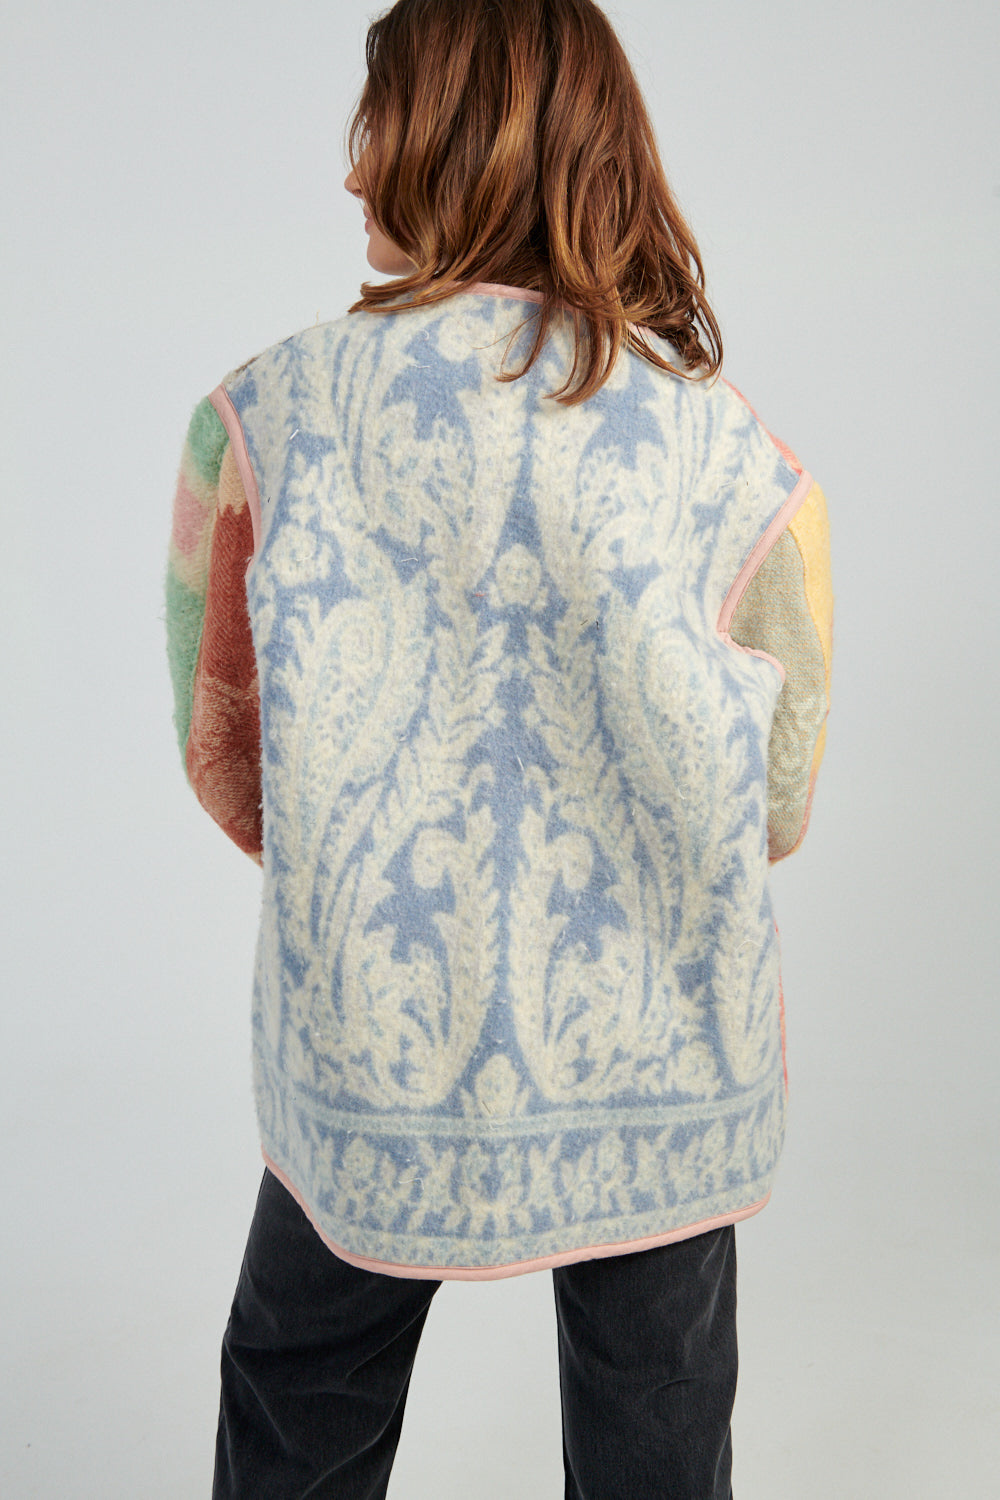 Carleen Liner Jacket-Carleen patchwork quilt jacket-Idun-St. Paul